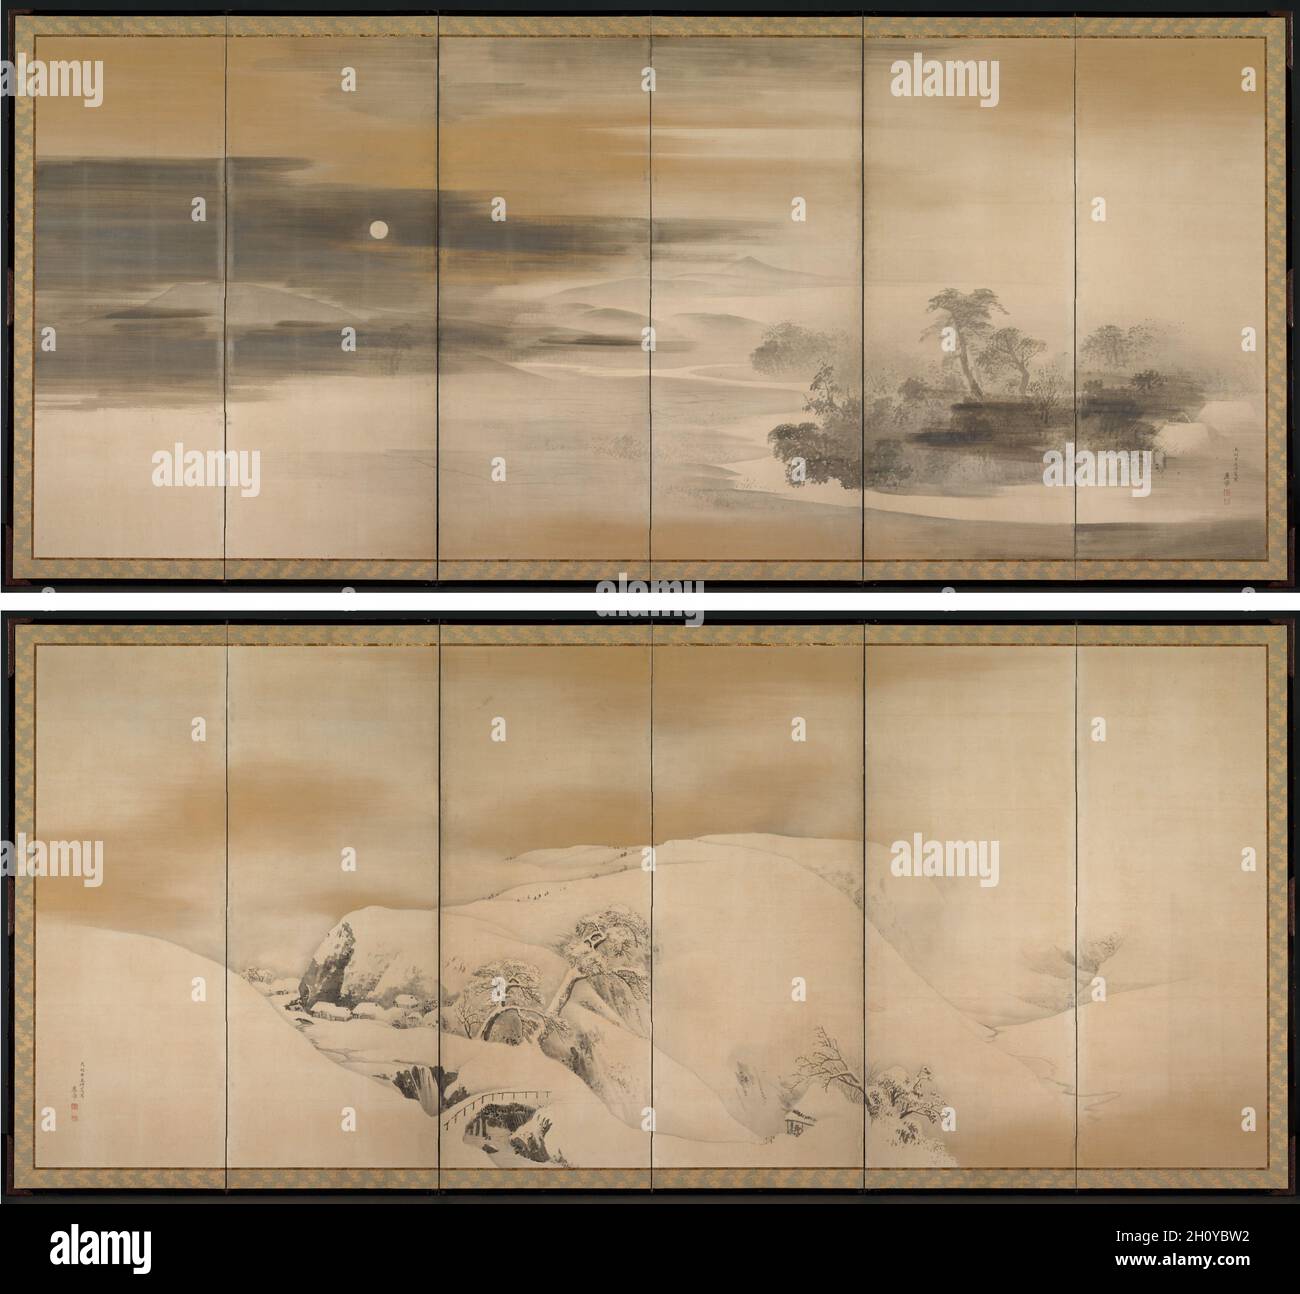 Nuit d'été; jour d'hiver, 1784.Maruyama Ōkyo (japonais, 1733-1795).Paire d'écrans pliants à six panneaux, encre, or et argent sur papier ; total : 154 x 362 cm (60 5/8 x 142 1/2 po).?kyo peint ces panoramas à l'été 1784.Considéré comme le plus important professeur de peinture et artiste accompli de Kyoto, il avait étudié les techniques de peinture occidentales, l'esquisse « réaliste » de la nature et la peinture traditionnelle japonaise (yamato-e).La qualité naturaliste de ces scènes résulte d'un mélange d'observation détaillée de la nature et d'un regard éloigné, même détaché, pour la place de l'homme dans le wor Banque D'Images